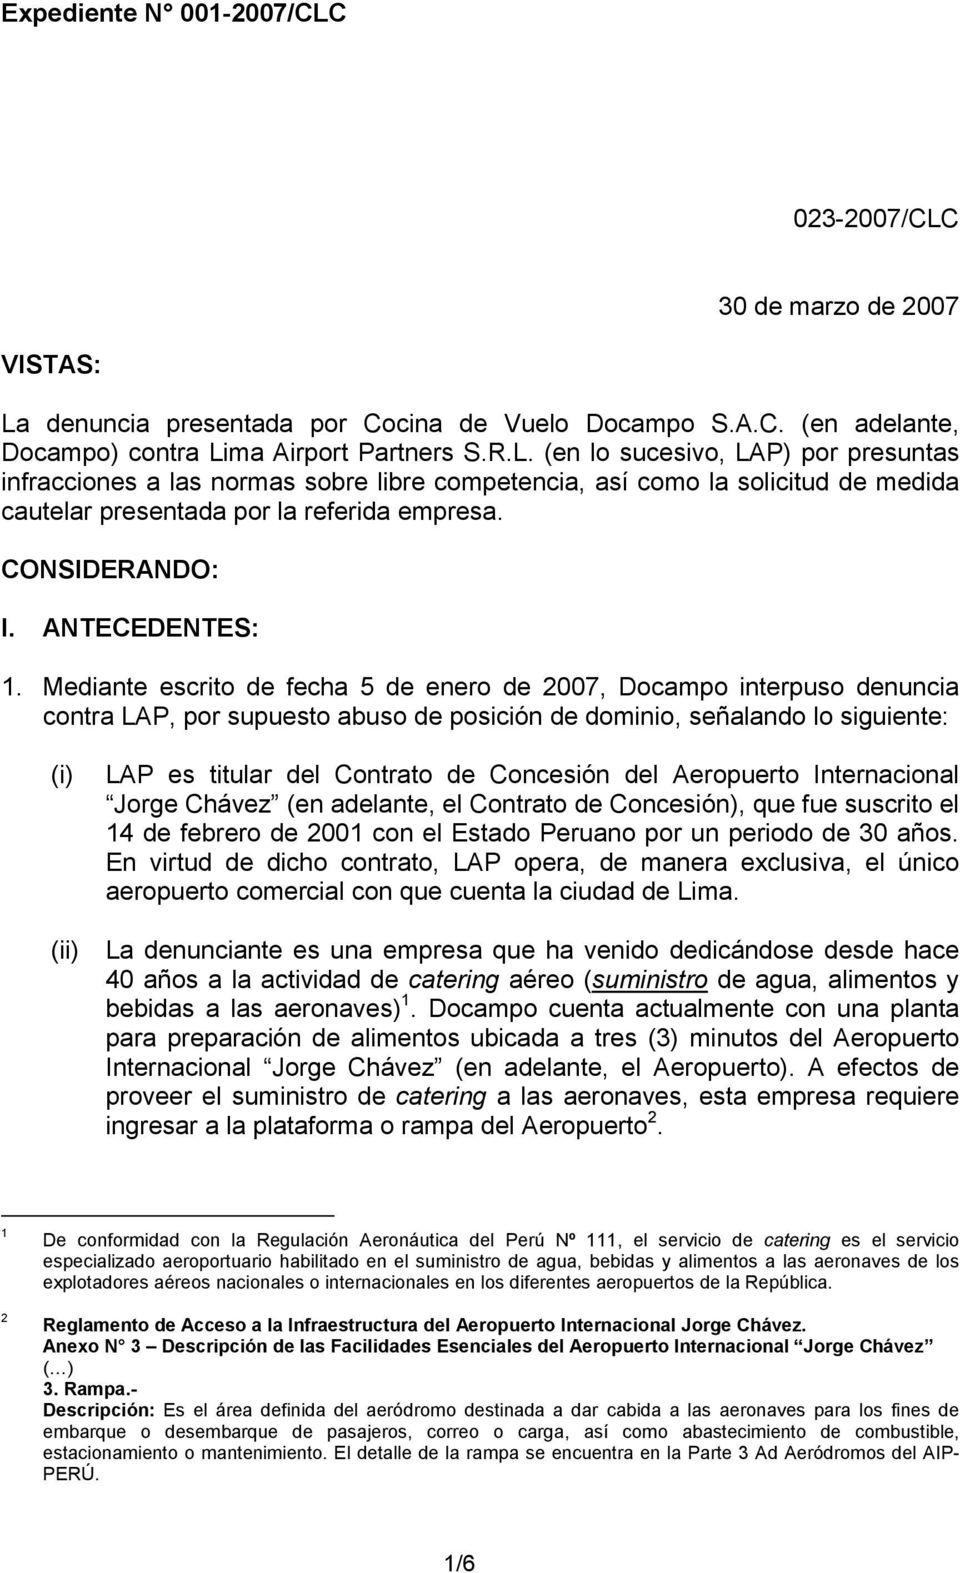 Mediante escrito de fecha 5 de enero de 2007, Docampo interpuso denuncia contra LAP, por supuesto abuso de posición de dominio, señalando lo siguiente: (i) LAP es titular del Contrato de Concesión